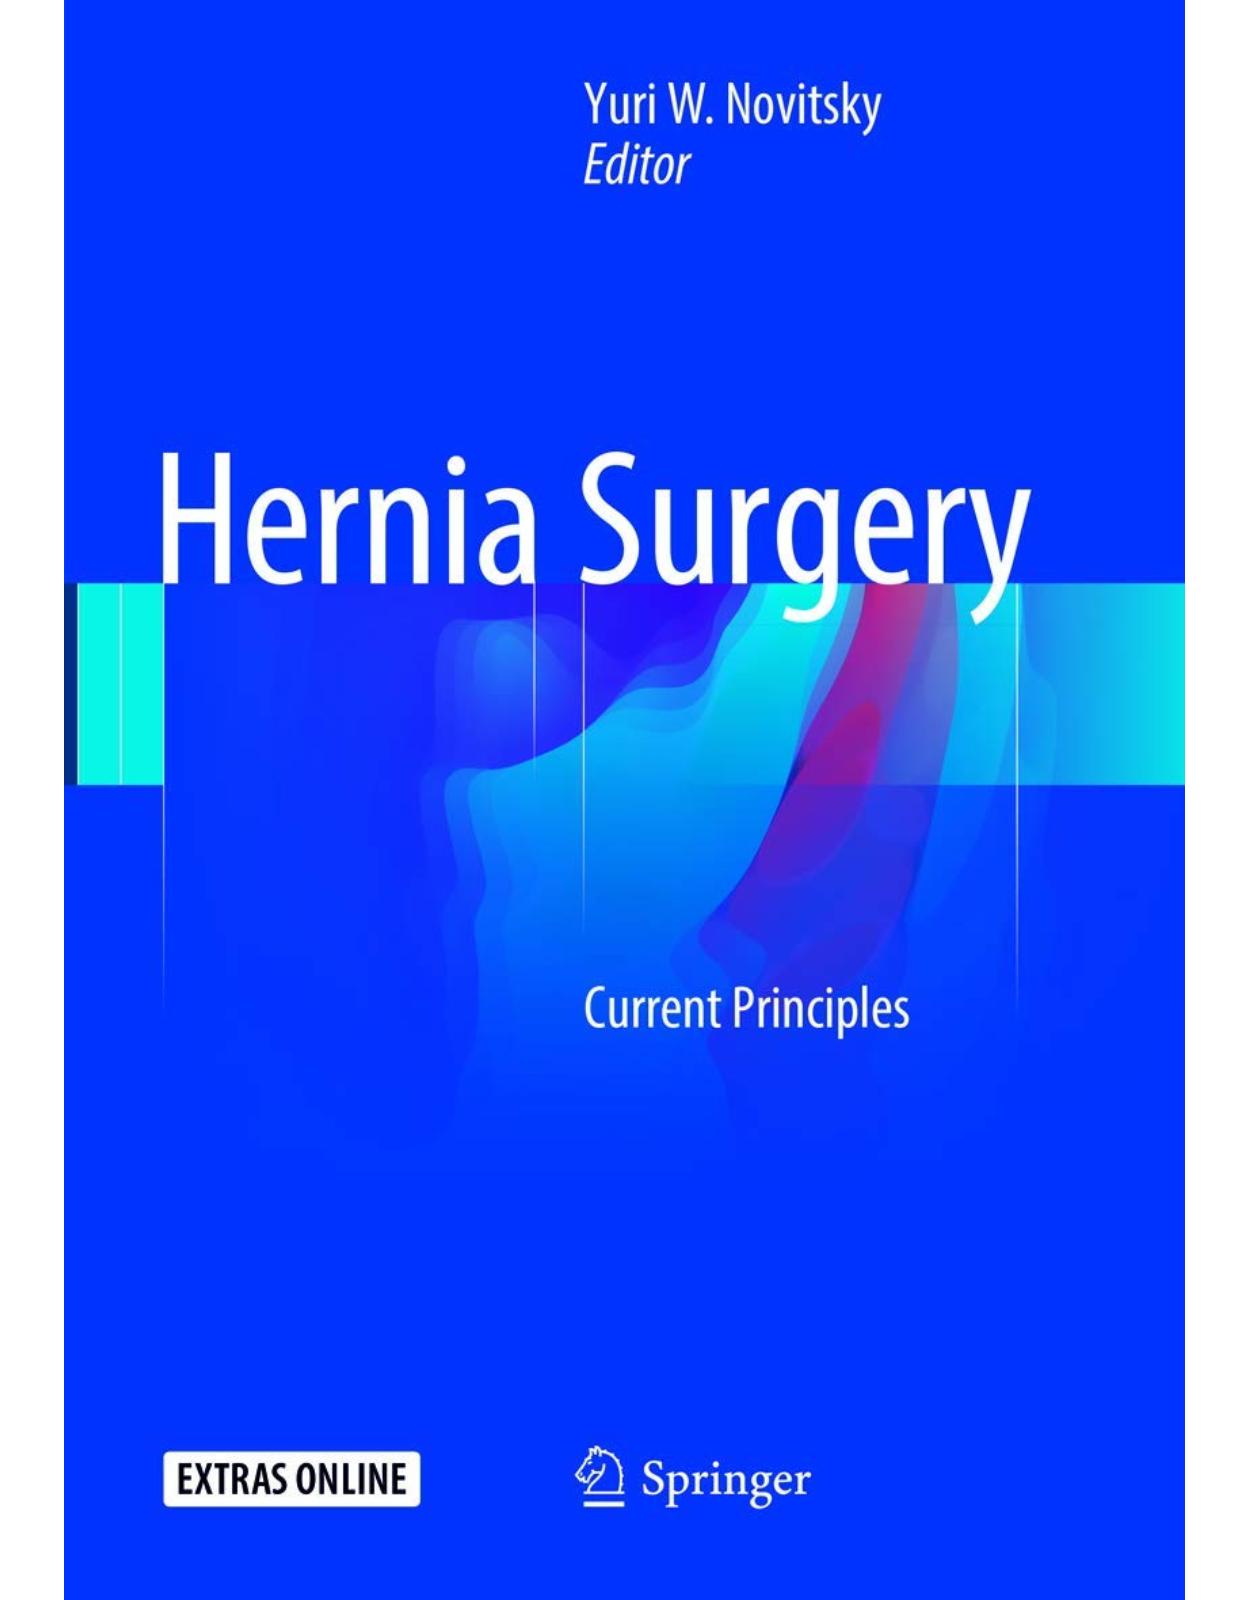 Hernia Surgery: Current Principles